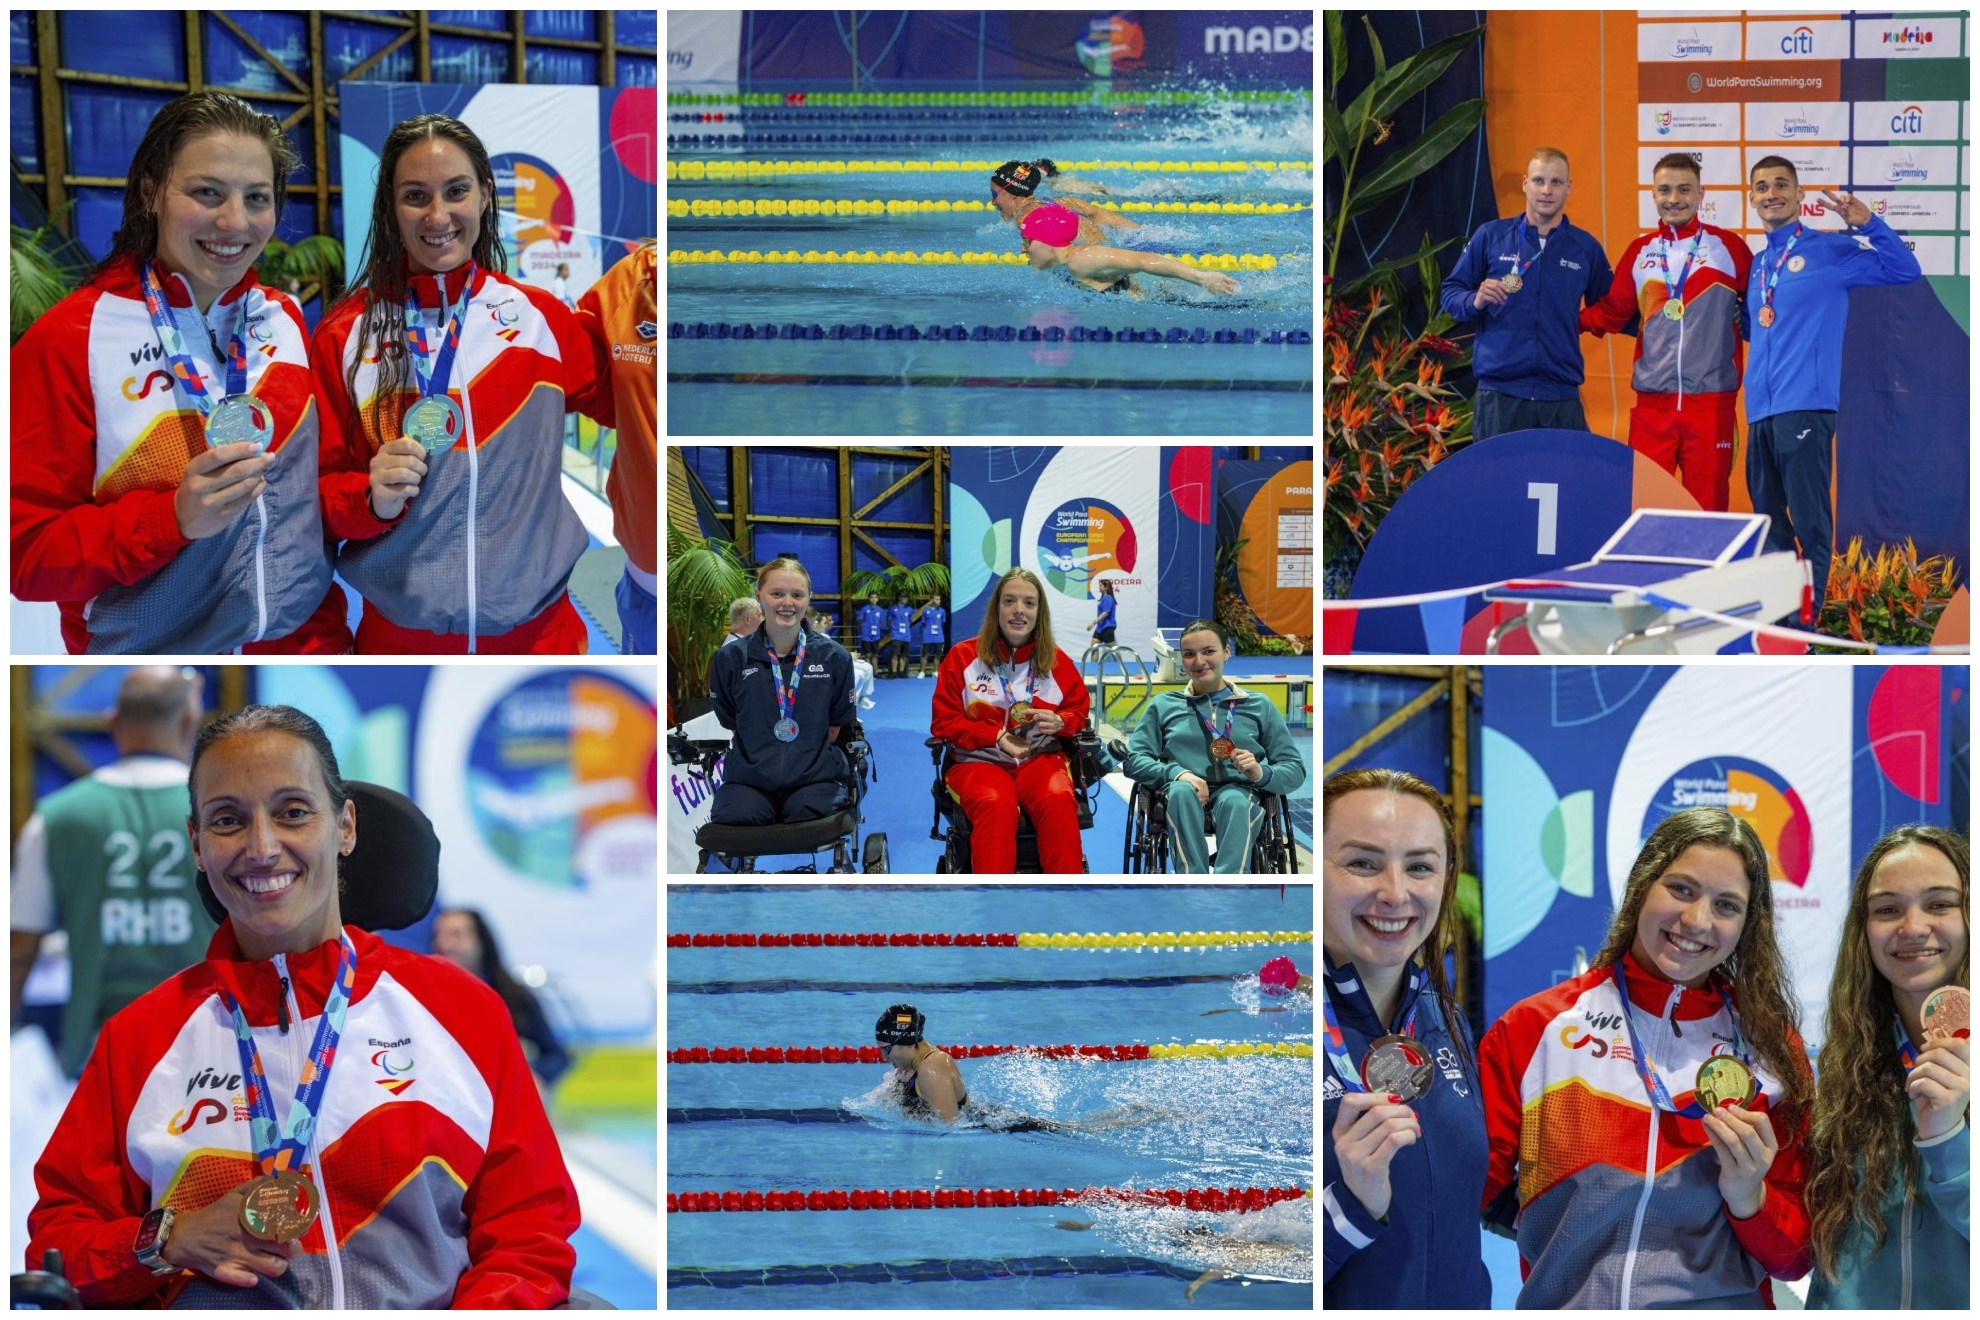 Algunos de los nadadores paral�mpicos espa�oles que han subido al podio en Madeira.